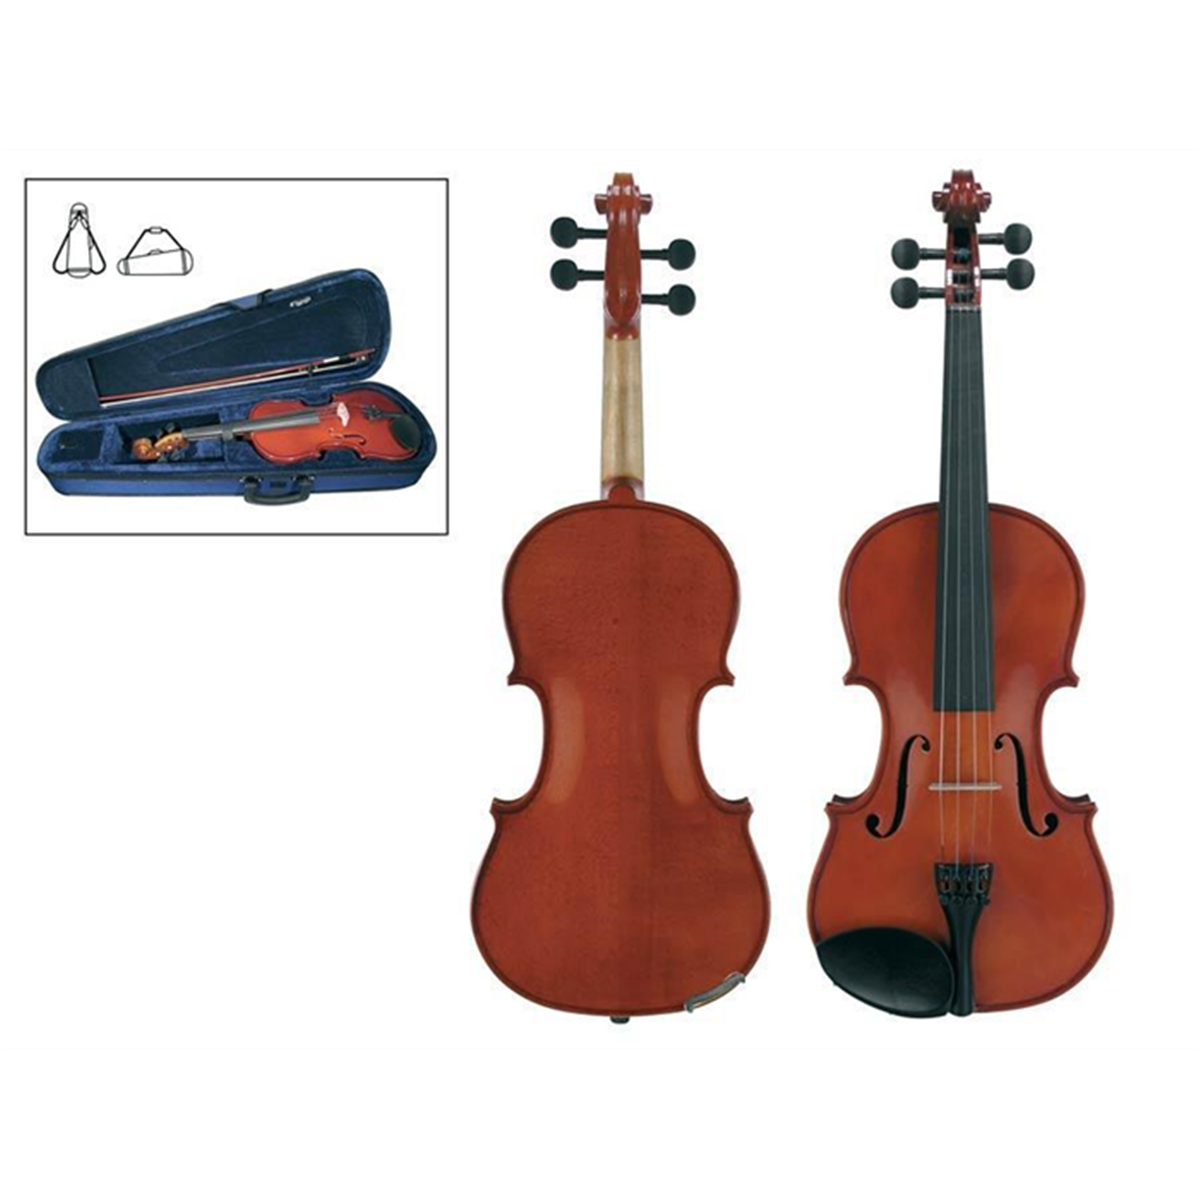 Скрипка 4/4 Antoni ats44. Скрипка для начинающих. Верхняя и нижняя дека скрипки. Параметры скрипки 1/8.